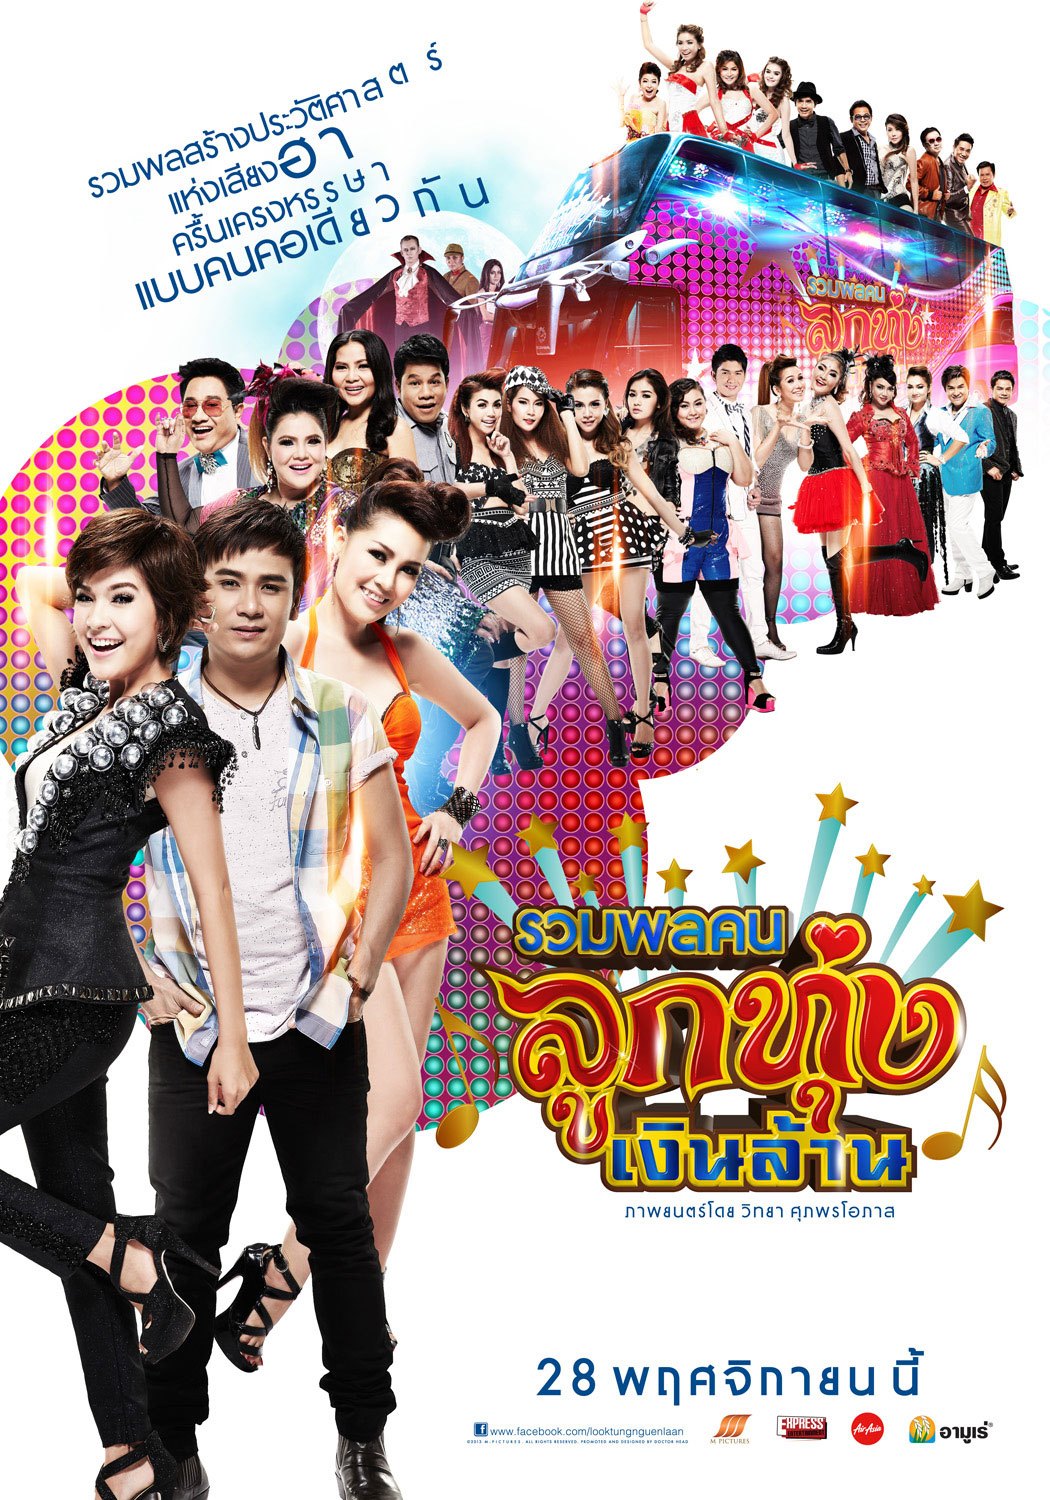 ดูหนังออนไลน์ Looktung Millionaire (2013) รวมพลคนลูกทุ่งเงินล้าน หนังมาสเตอร์ หนังเต็มเรื่อง ดูหนังฟรีออนไลน์ ดูหนังออนไลน์ หนังออนไลน์ ดูหนังใหม่ หนังพากย์ไทย หนังซับไทย ดูฟรีHD